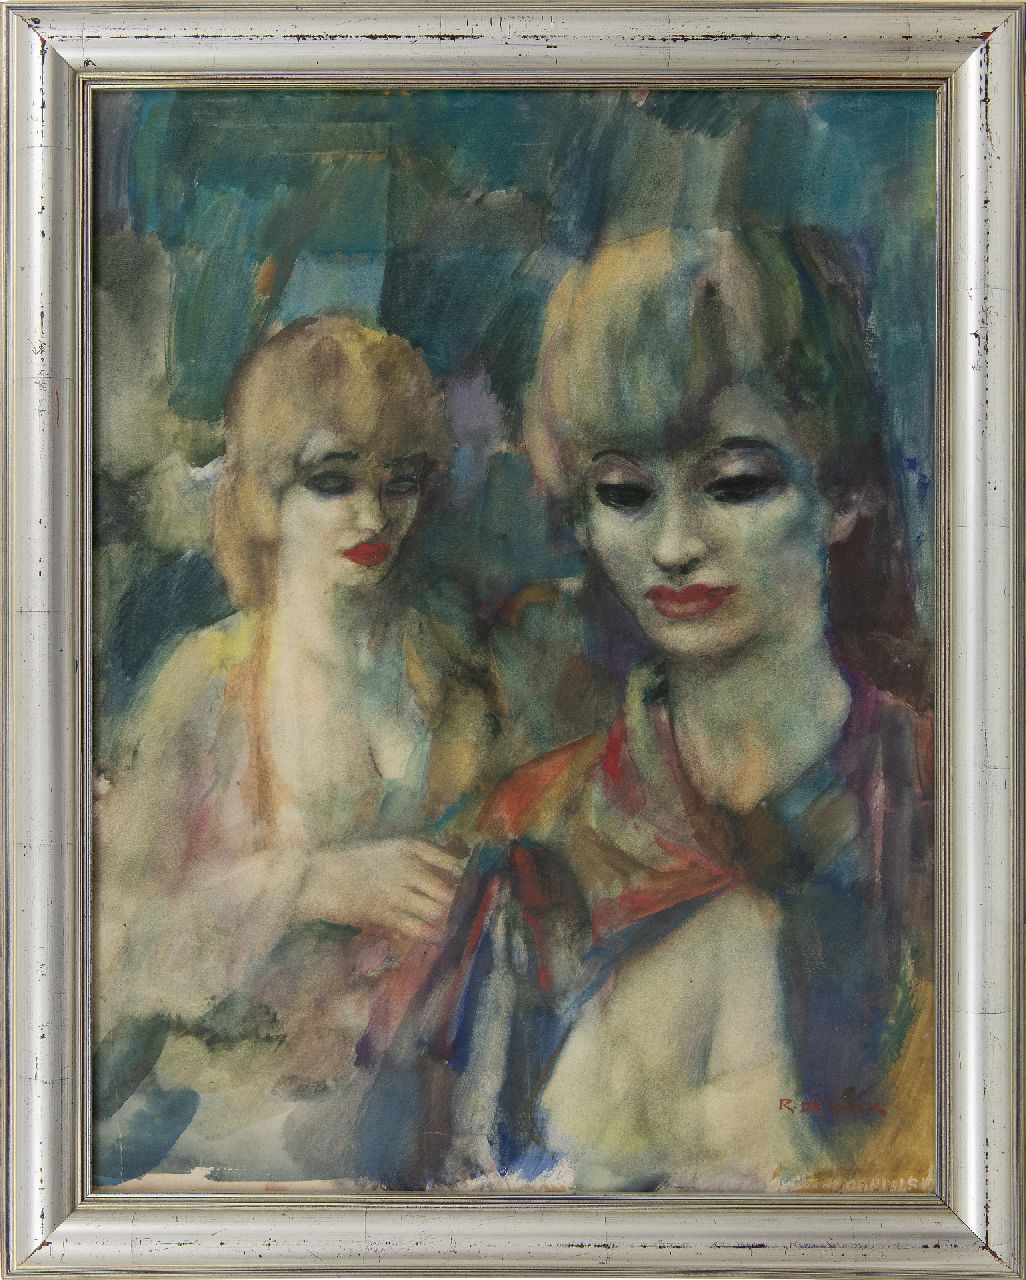 Buck R. de | Raphaël de Buck | Aquarellen en tekeningen te koop aangeboden | Twee vrouwen in het café, aquarel op papier 69,0 x 53,0 cm, gesigneerd rechtsonder